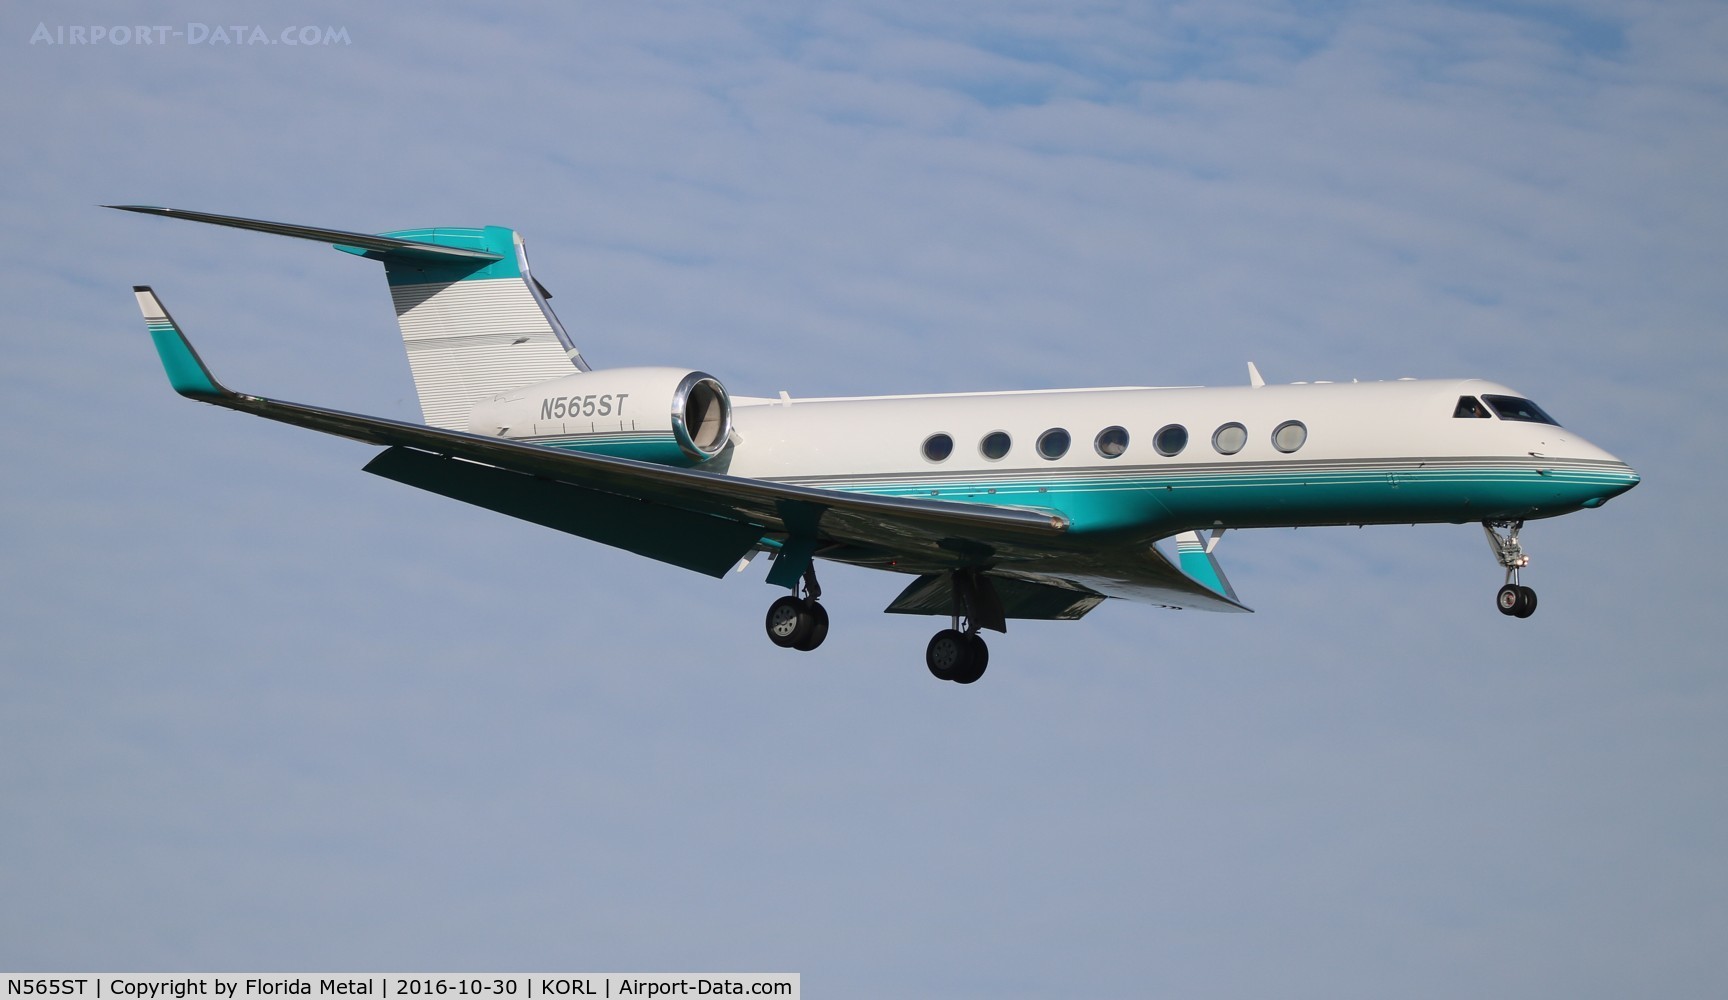 N565ST, 2004 Gulfstream Aerospace GV-SP (G550) C/N 5015, G550 zx